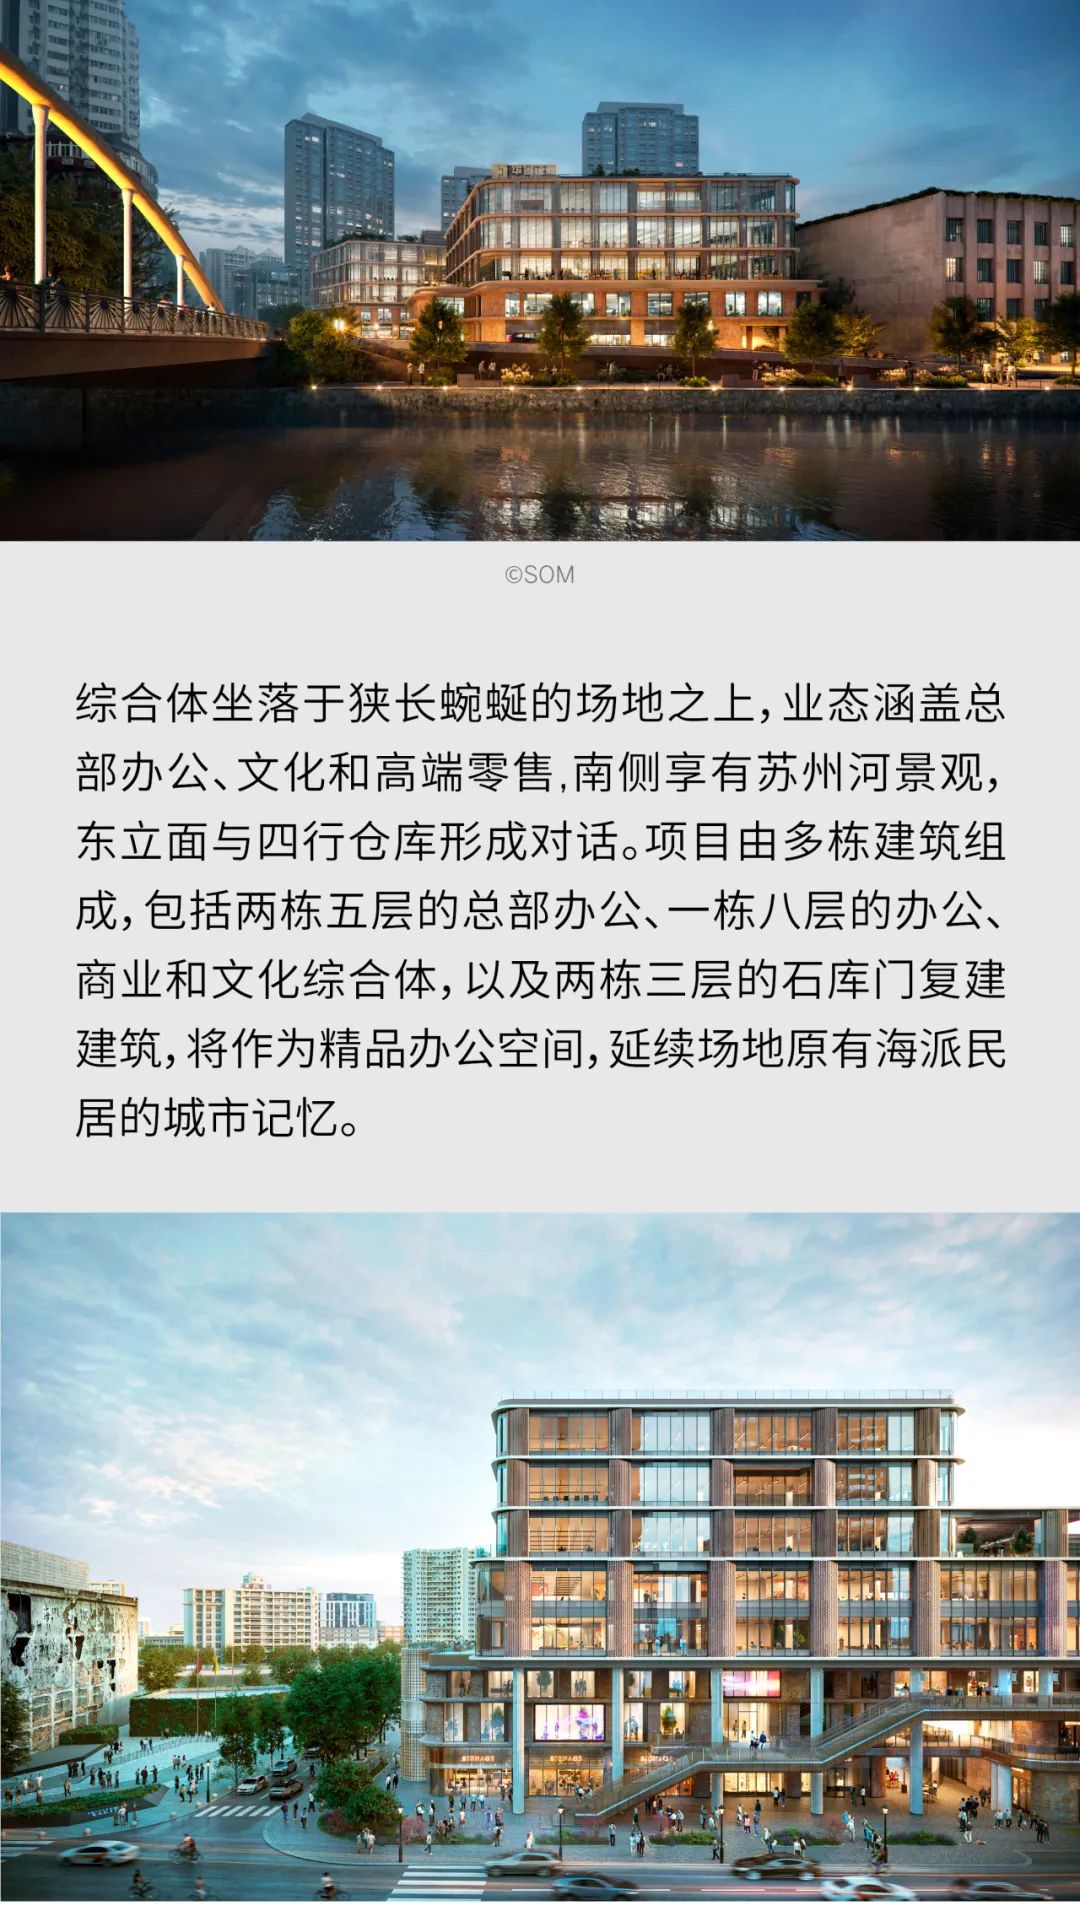 SOM X 城市更新 | 上海晋元路滨水开发项目